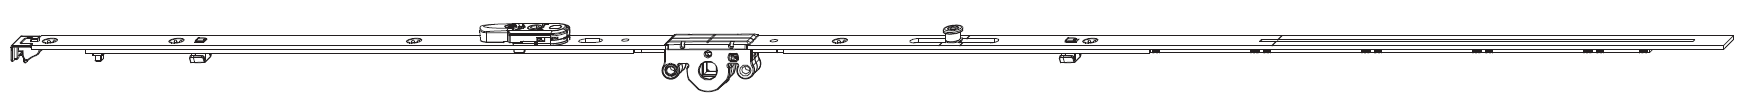 MAICO -  Cremonese MULTI-MATIC anta ribalta antieffrazione altezza maniglia fissa con piedino e dss per ribalta - gr / dim. 2450 - entrata 15 - alt. man. 1050 - lbb/hbb 2201 - 2450